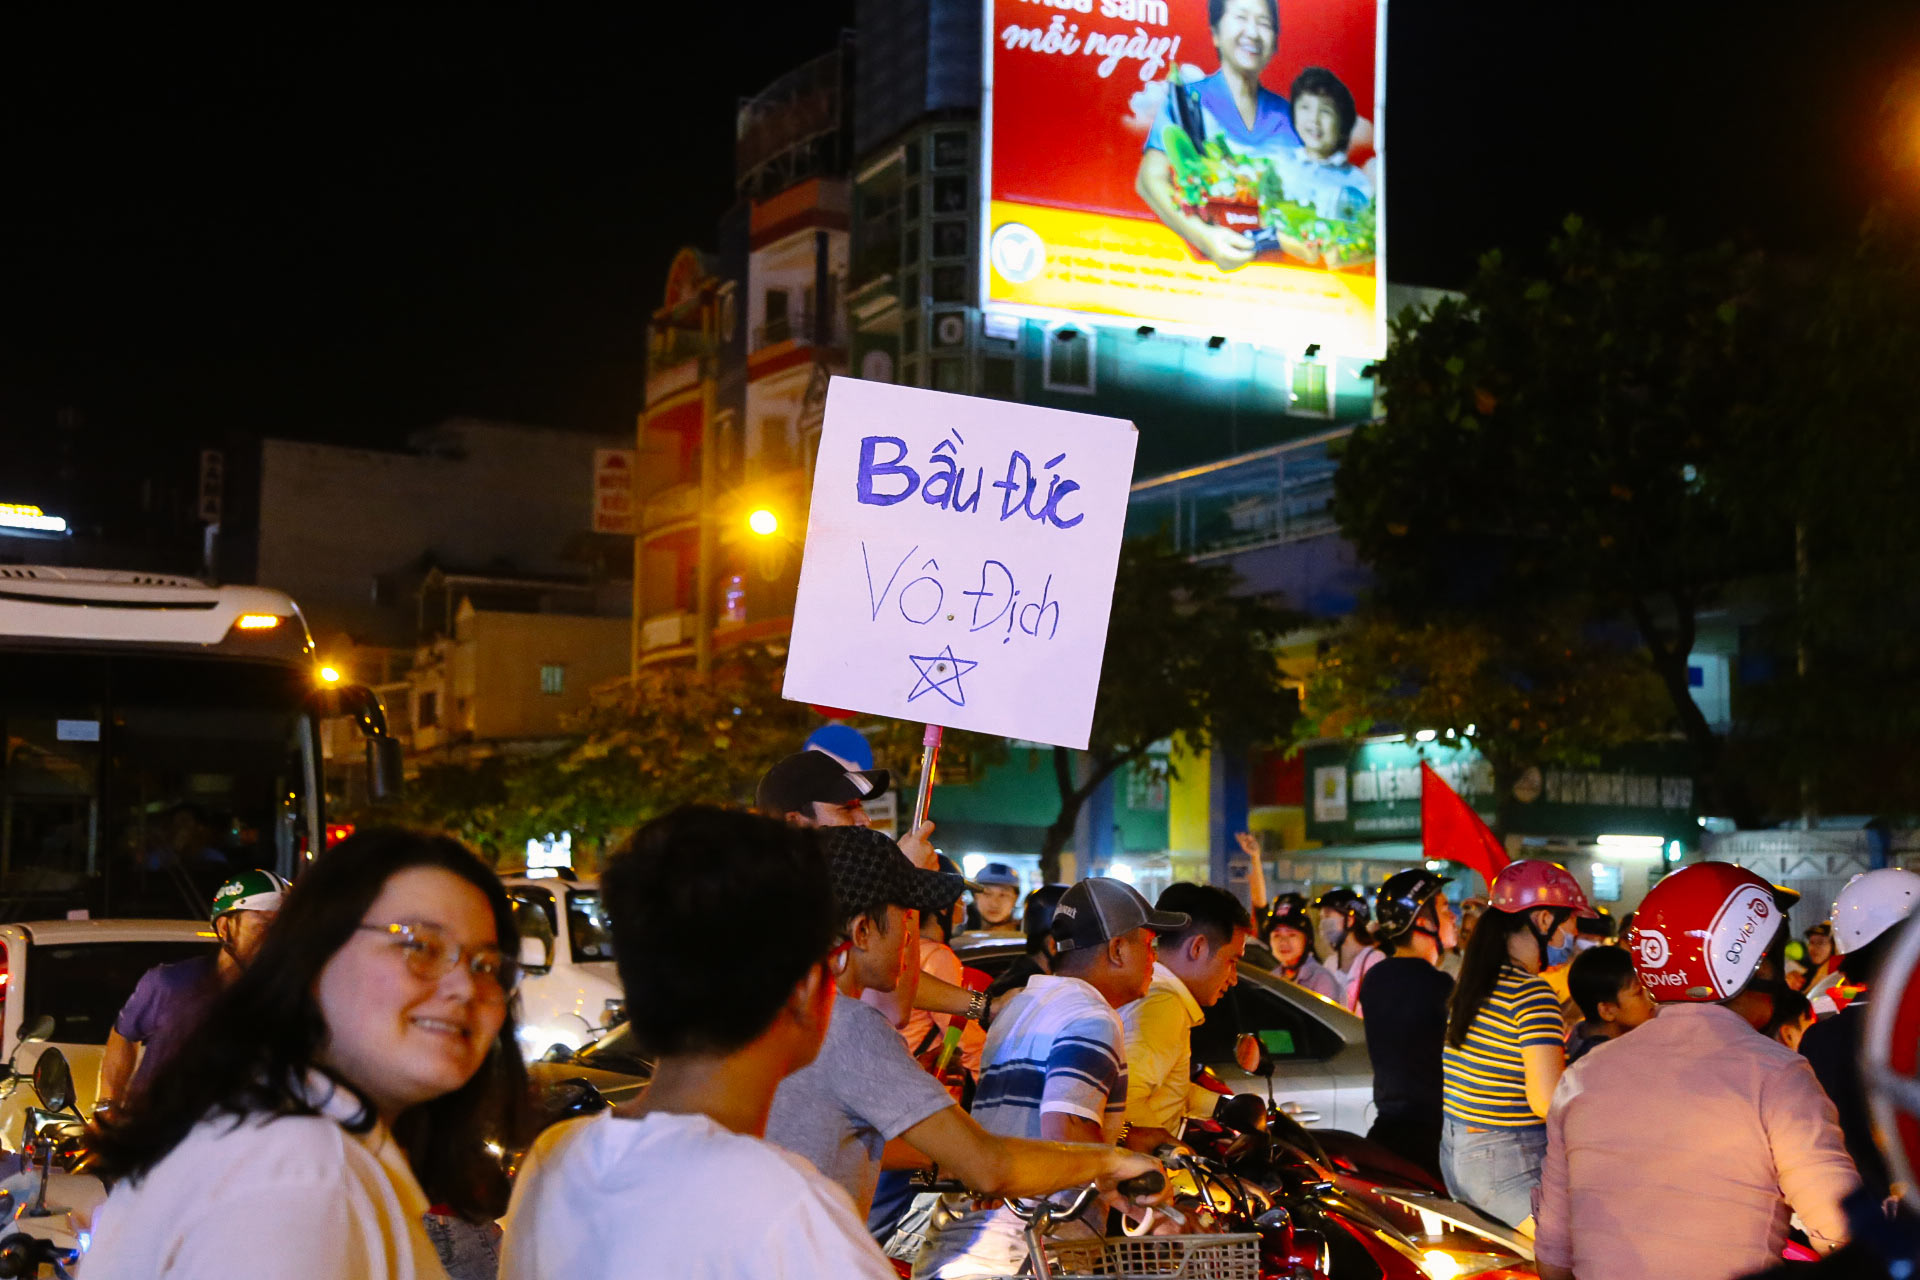 Nhìn lại những khoảnh khắc người Việt ngây ngất với bóng đá năm 2018 - 9